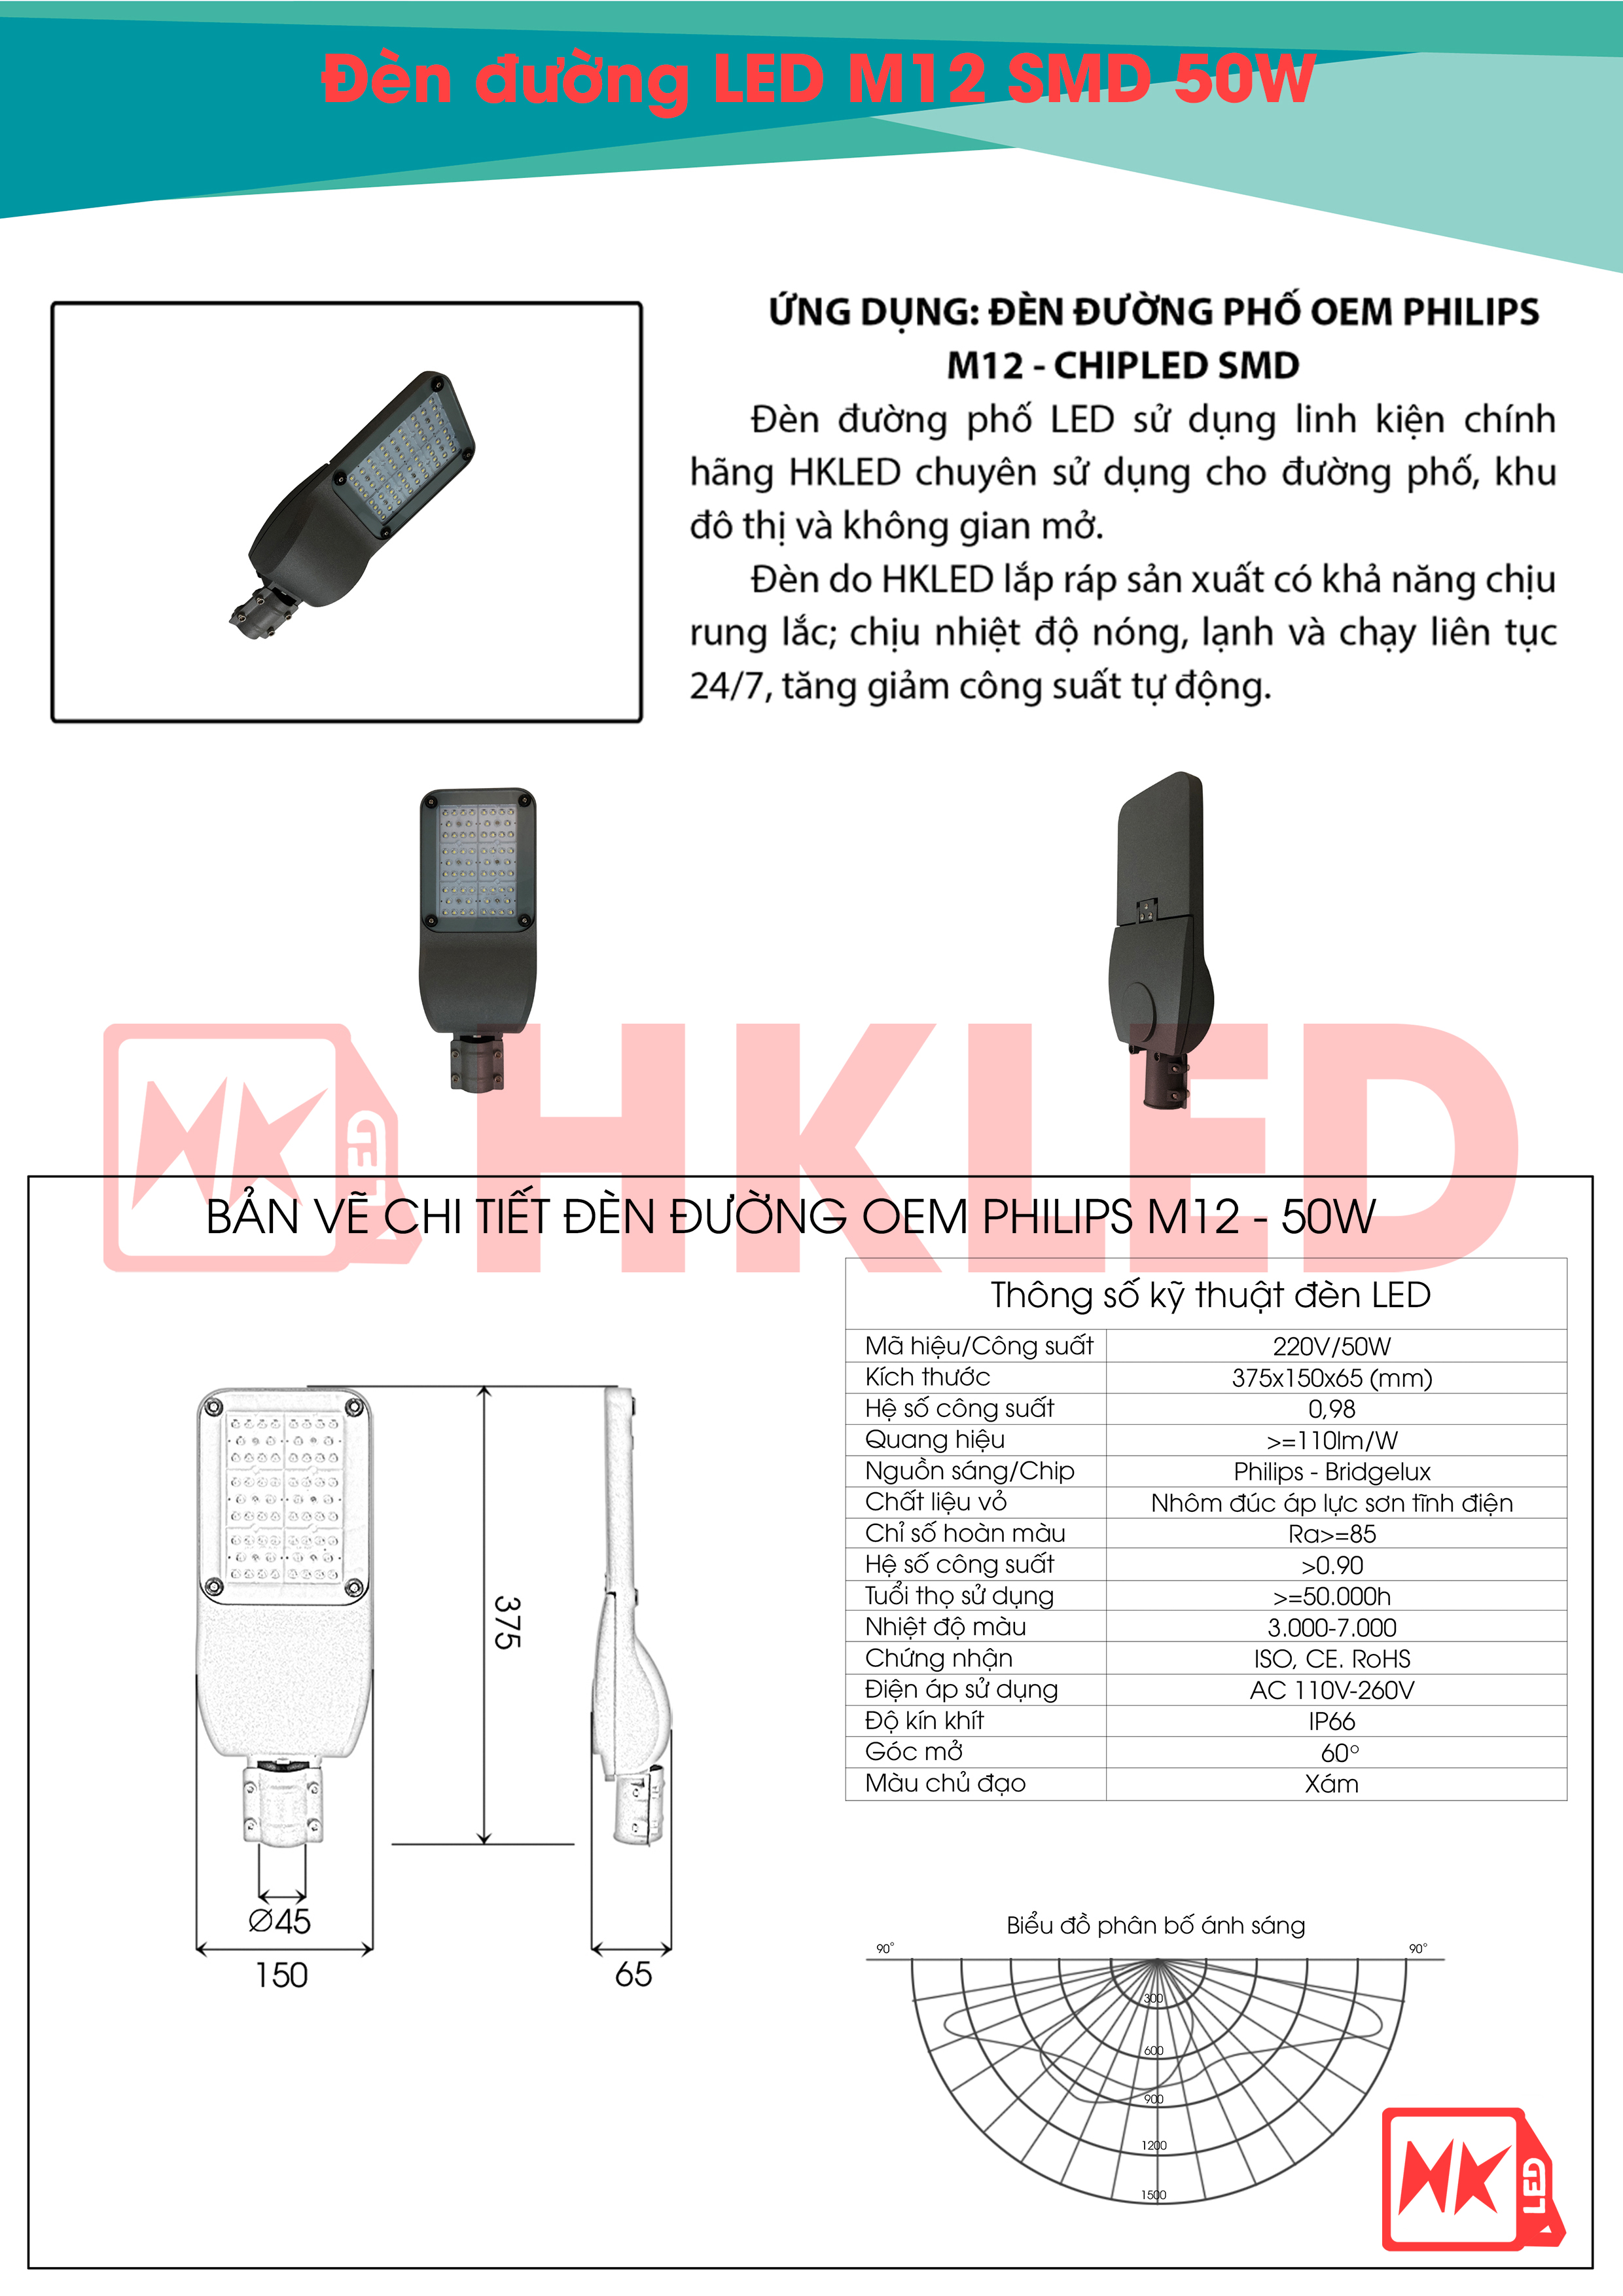 Ứng dụng, bản vẽ chi tiết và thông số kỹ thuật đèn đường LED OEM Philips M12 50W